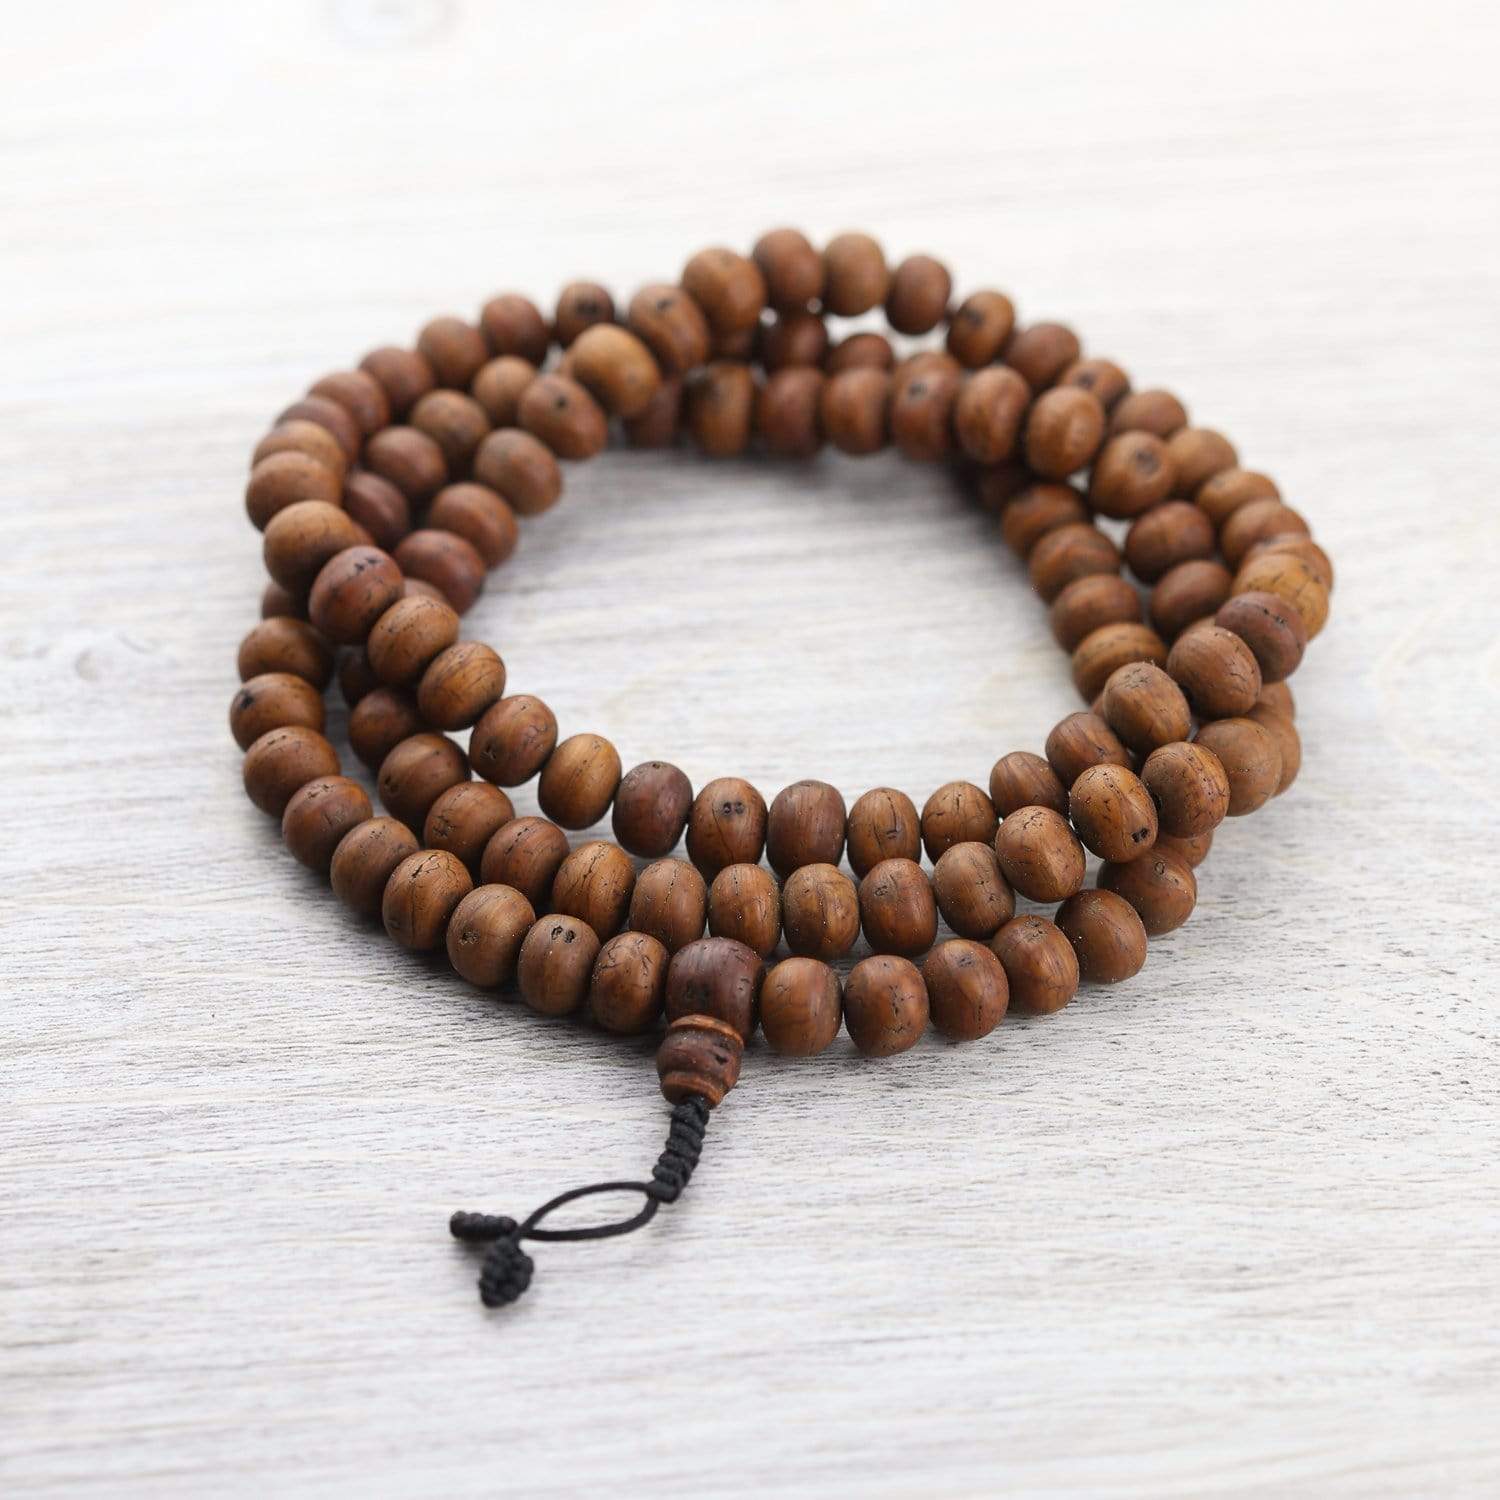 Bodhi Seed Wrist Mala Bracelet - Buy Online